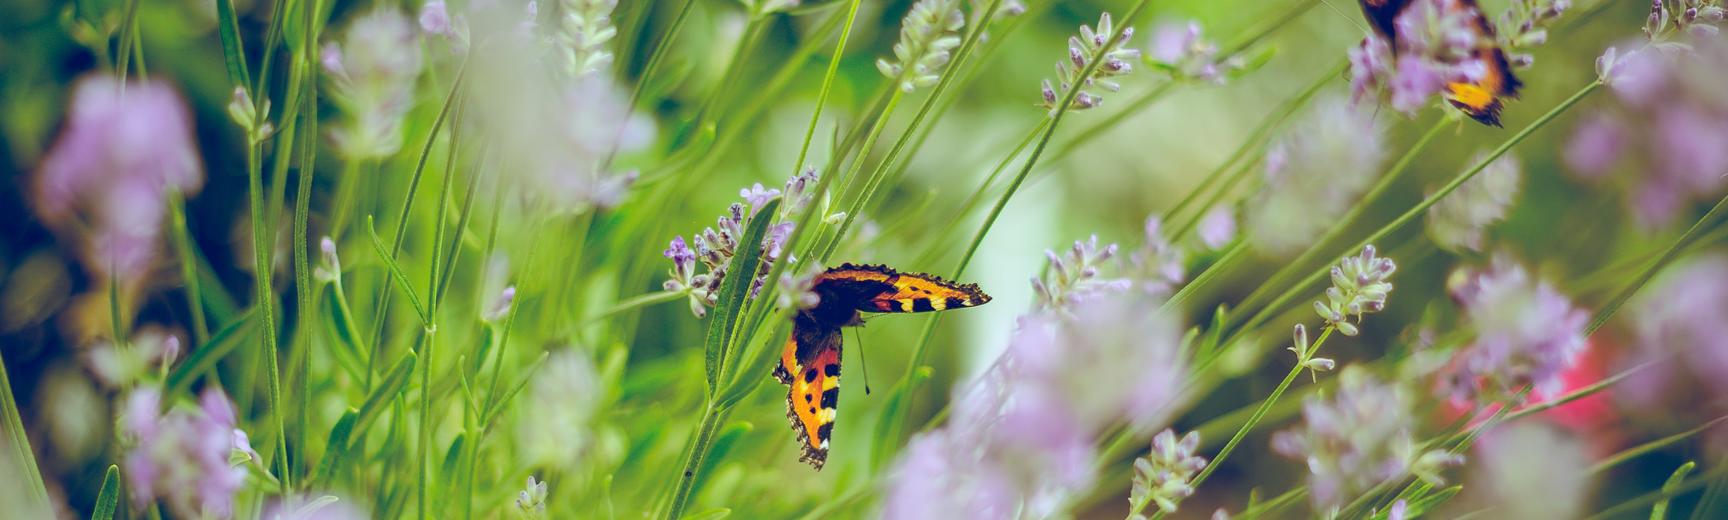 flowers and butterflies photo by emiel molenaar on unsplash